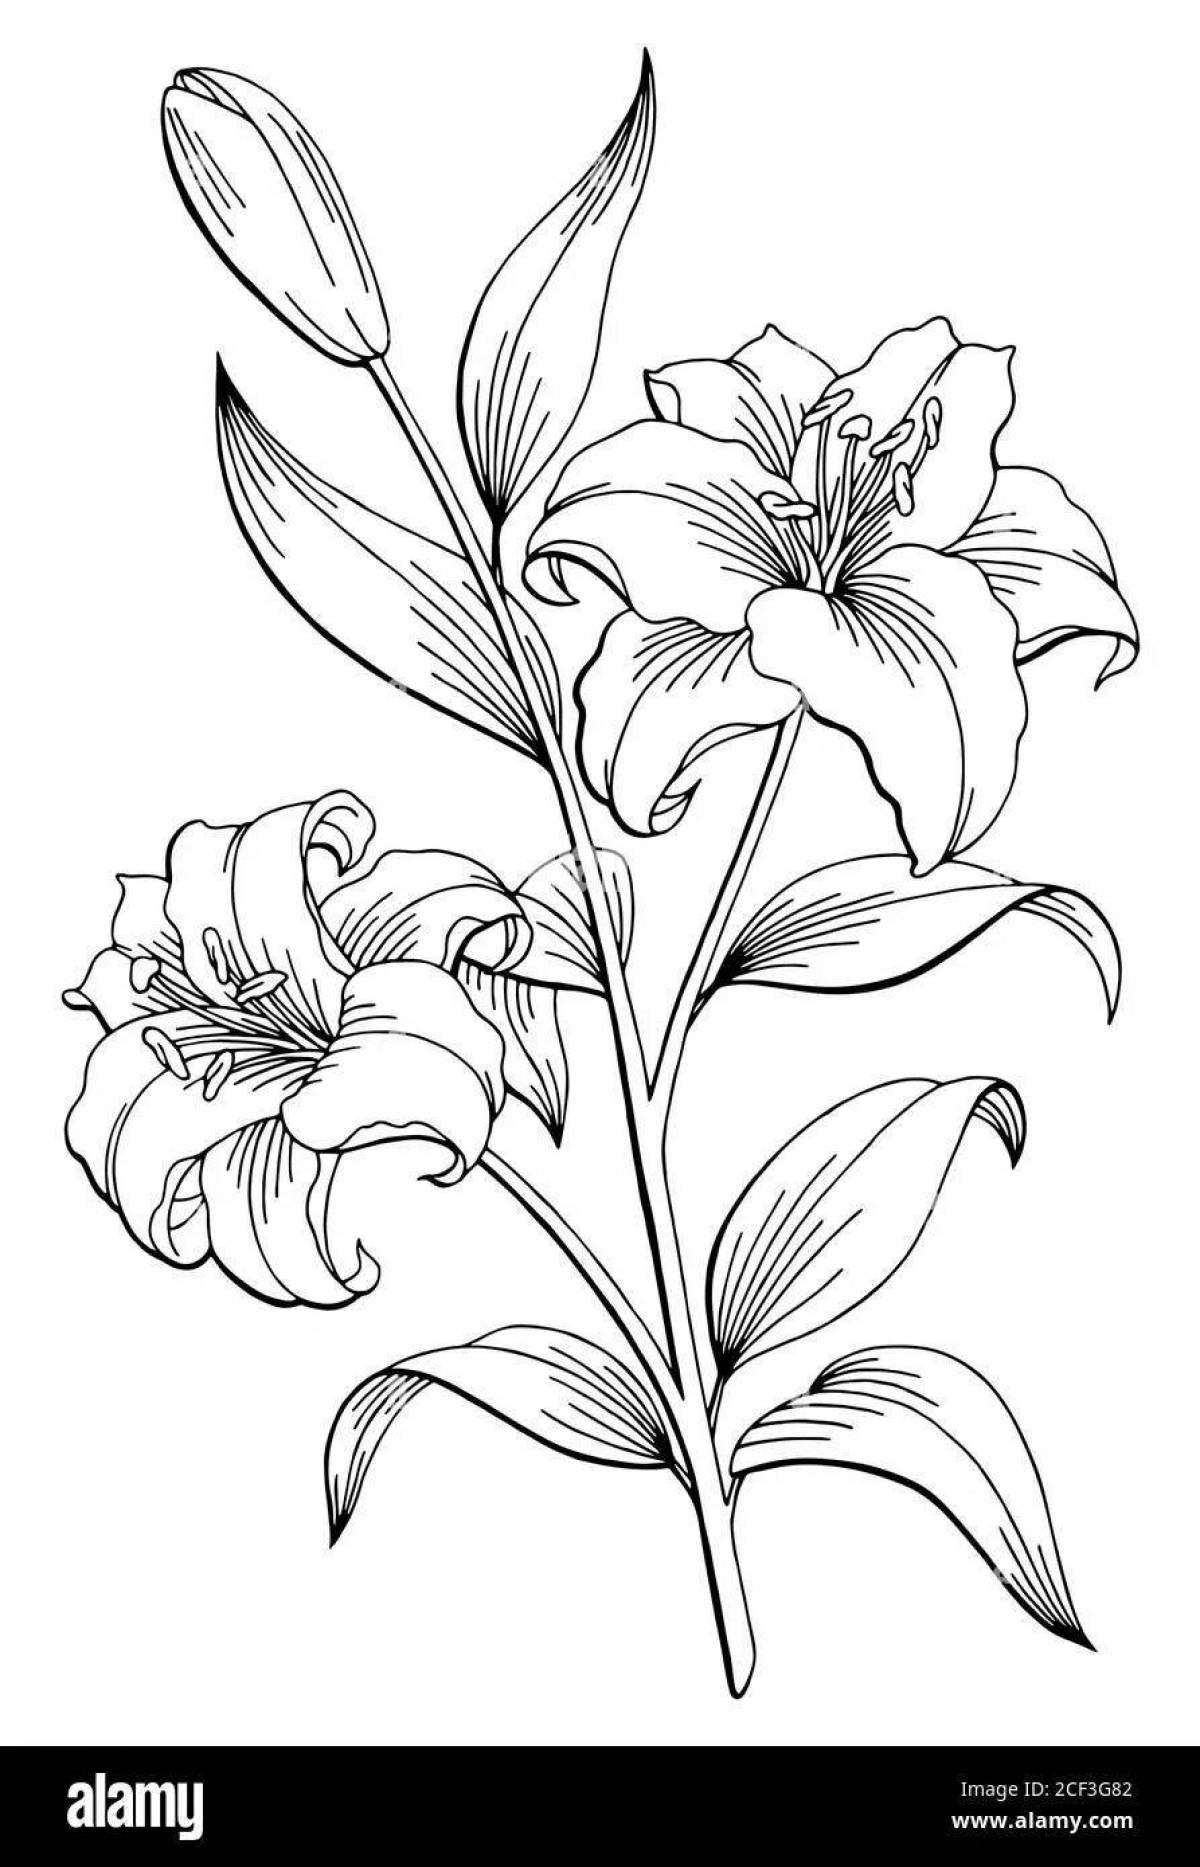 Coloring live lily saranka